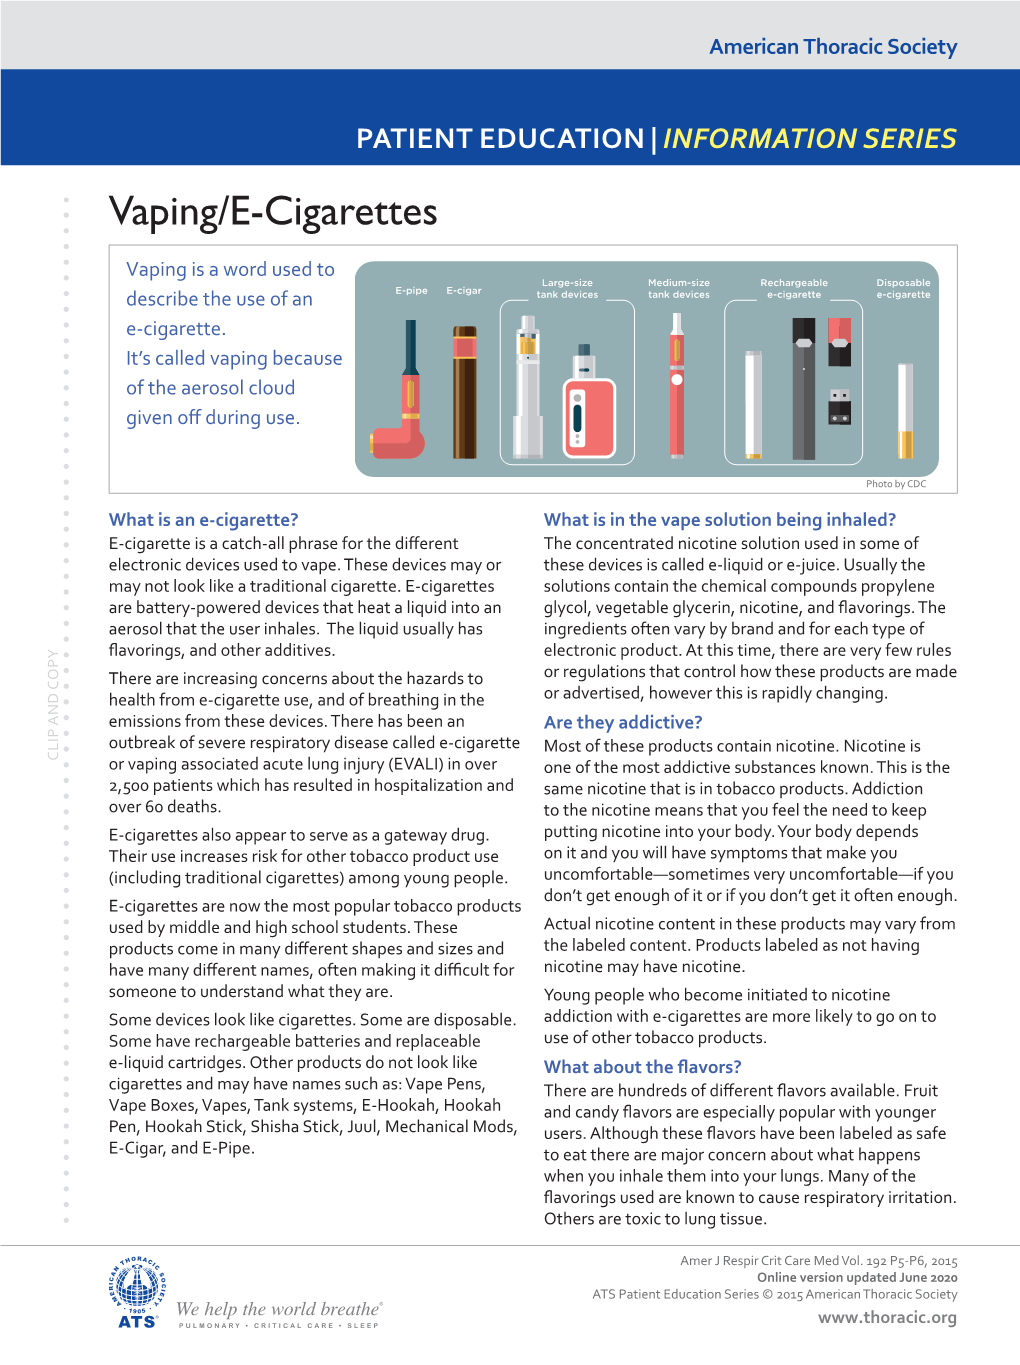 Vaping/E-Cigarettes